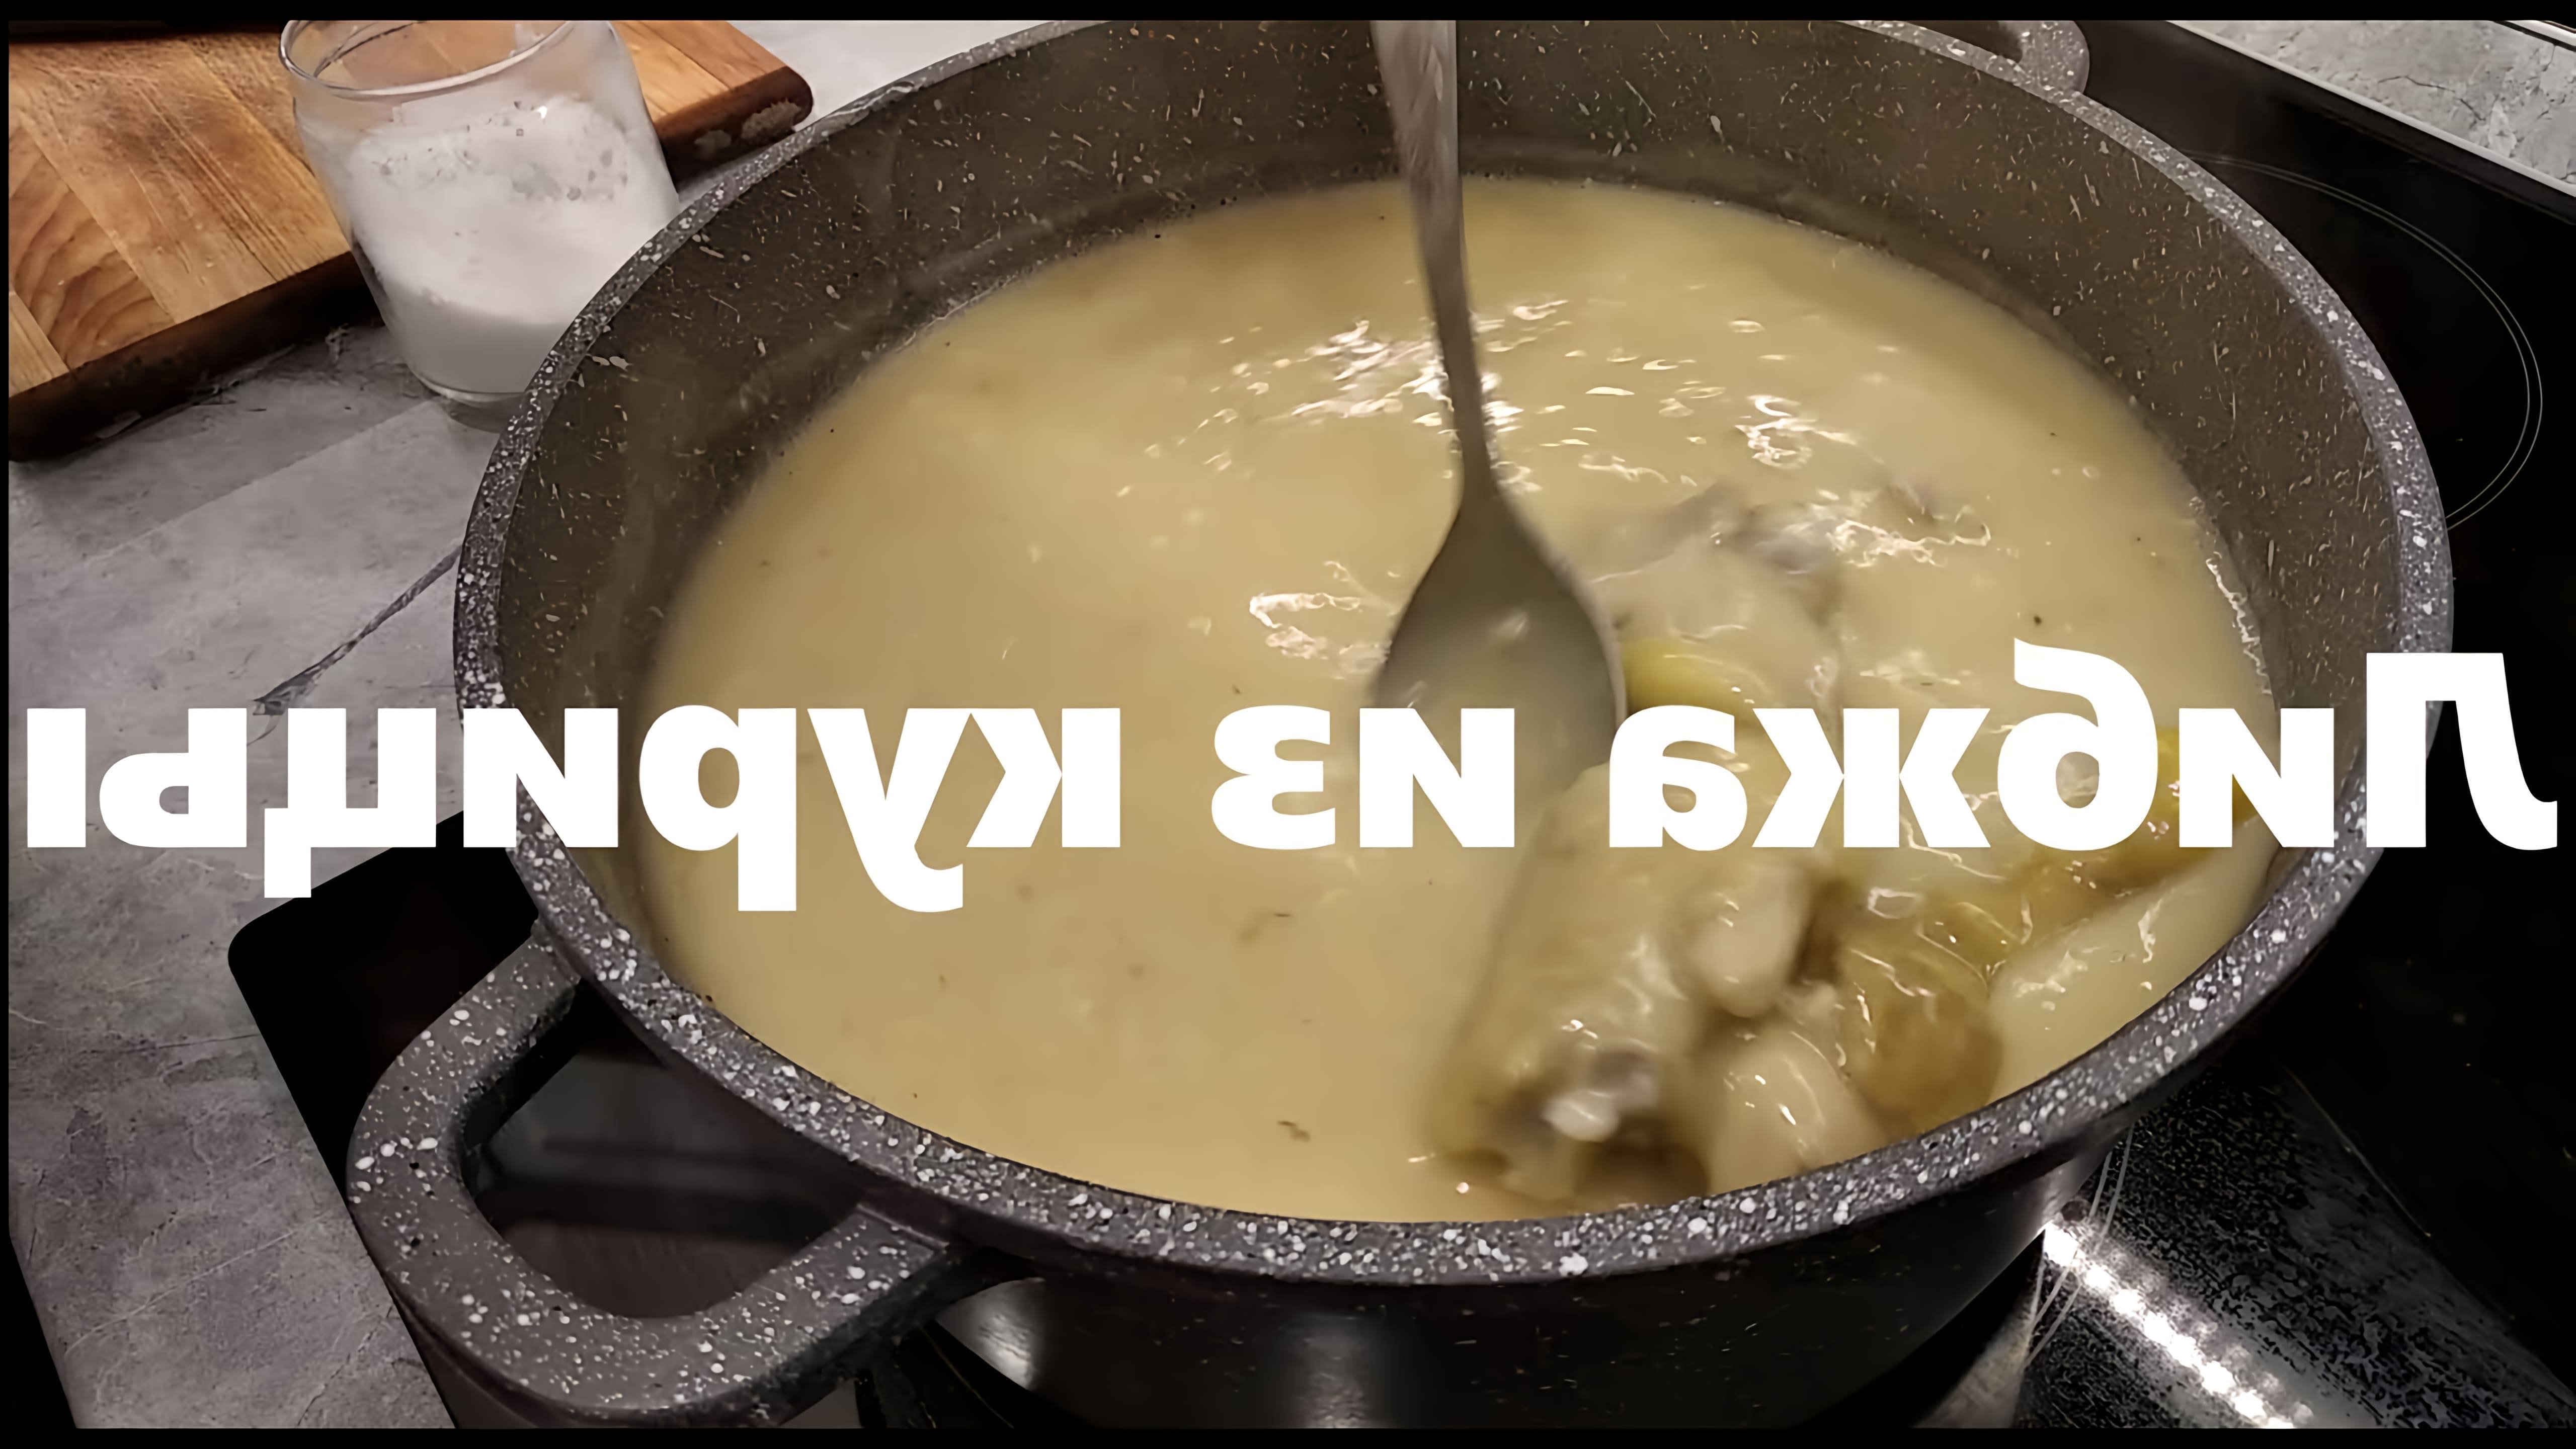 В этом видео демонстрируется процесс приготовления кабардинского блюда из курицы